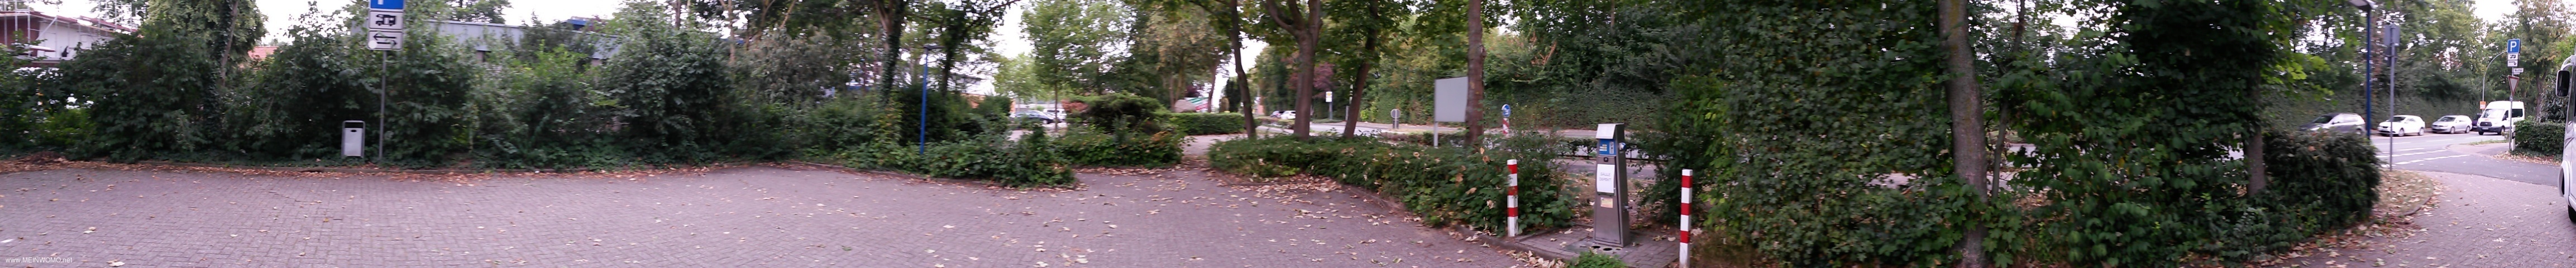  Sendenhorst dichtbij parkeerplaats